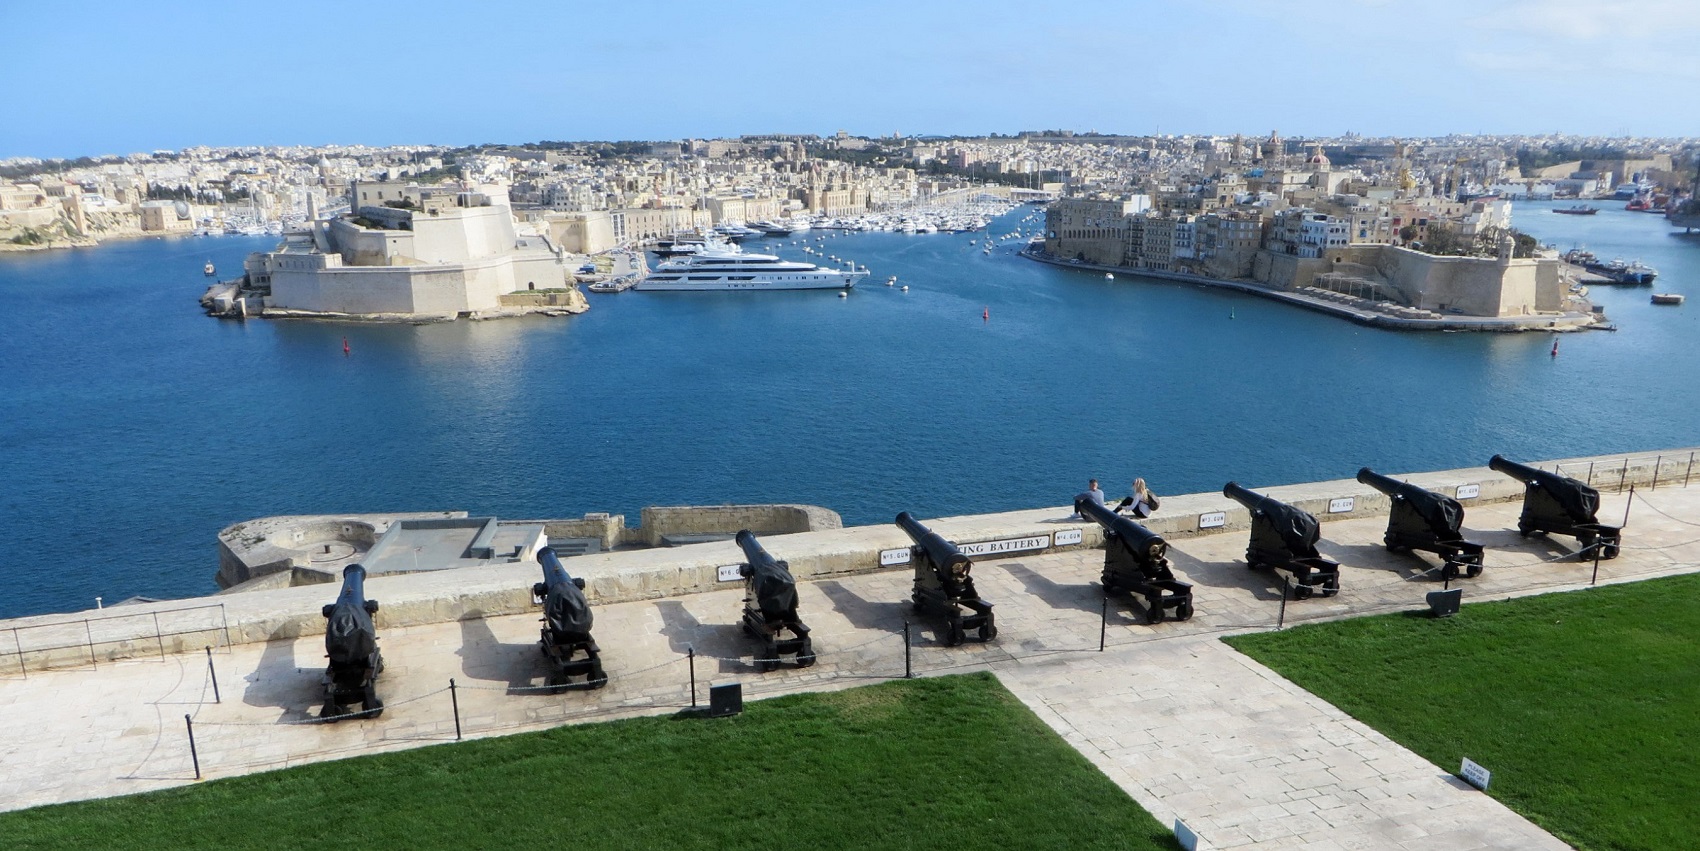 Malta Valletta culture